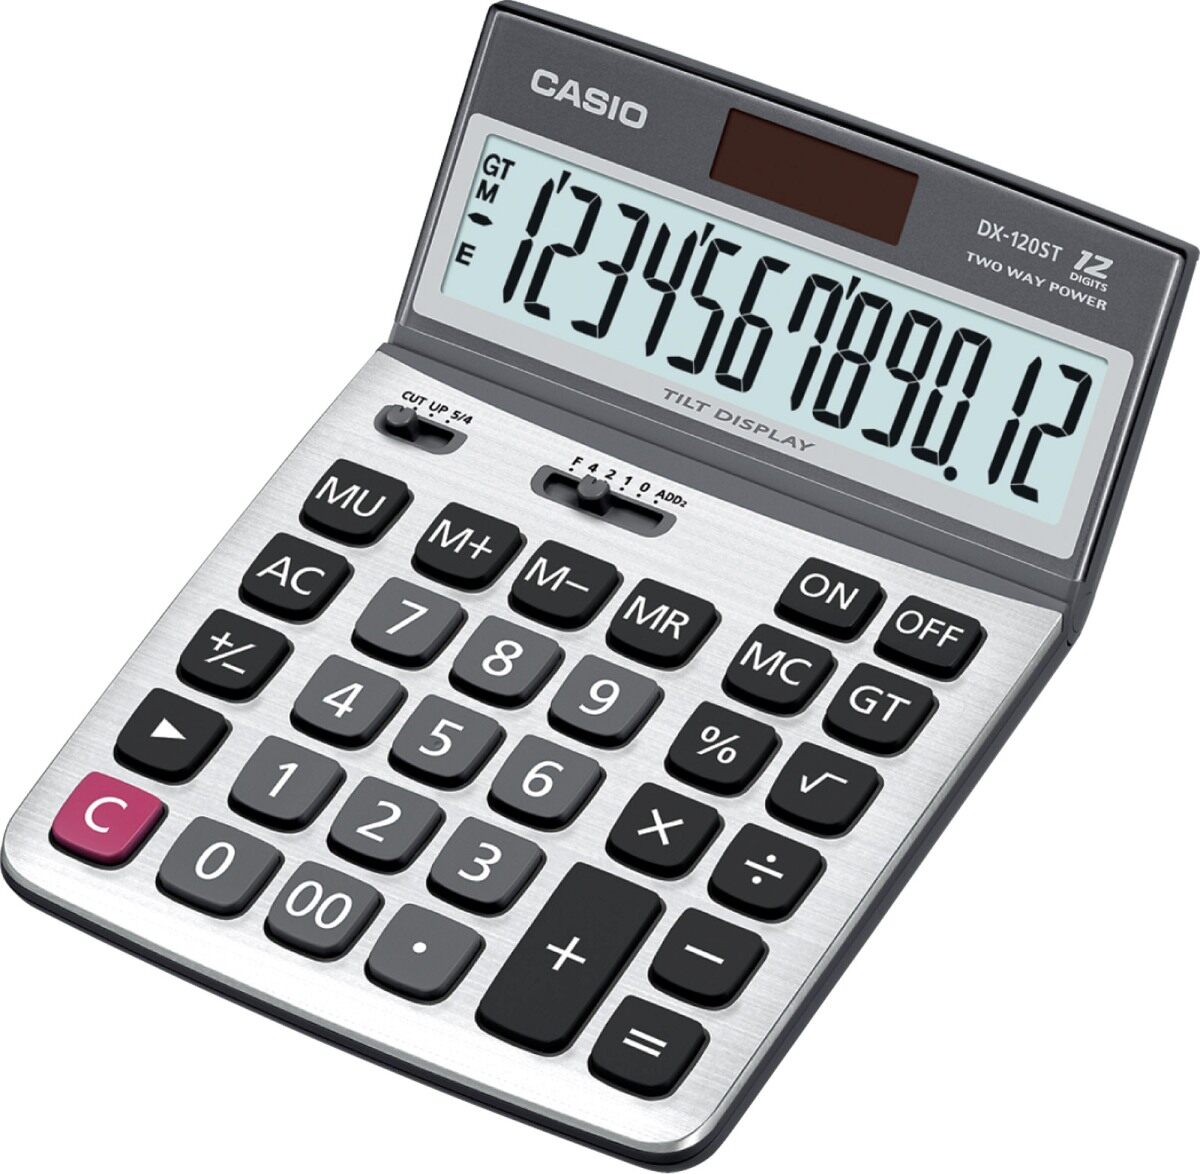 Casio Calculator เครื่องคิดเลข รุ่น DX-120ST สีเงิน